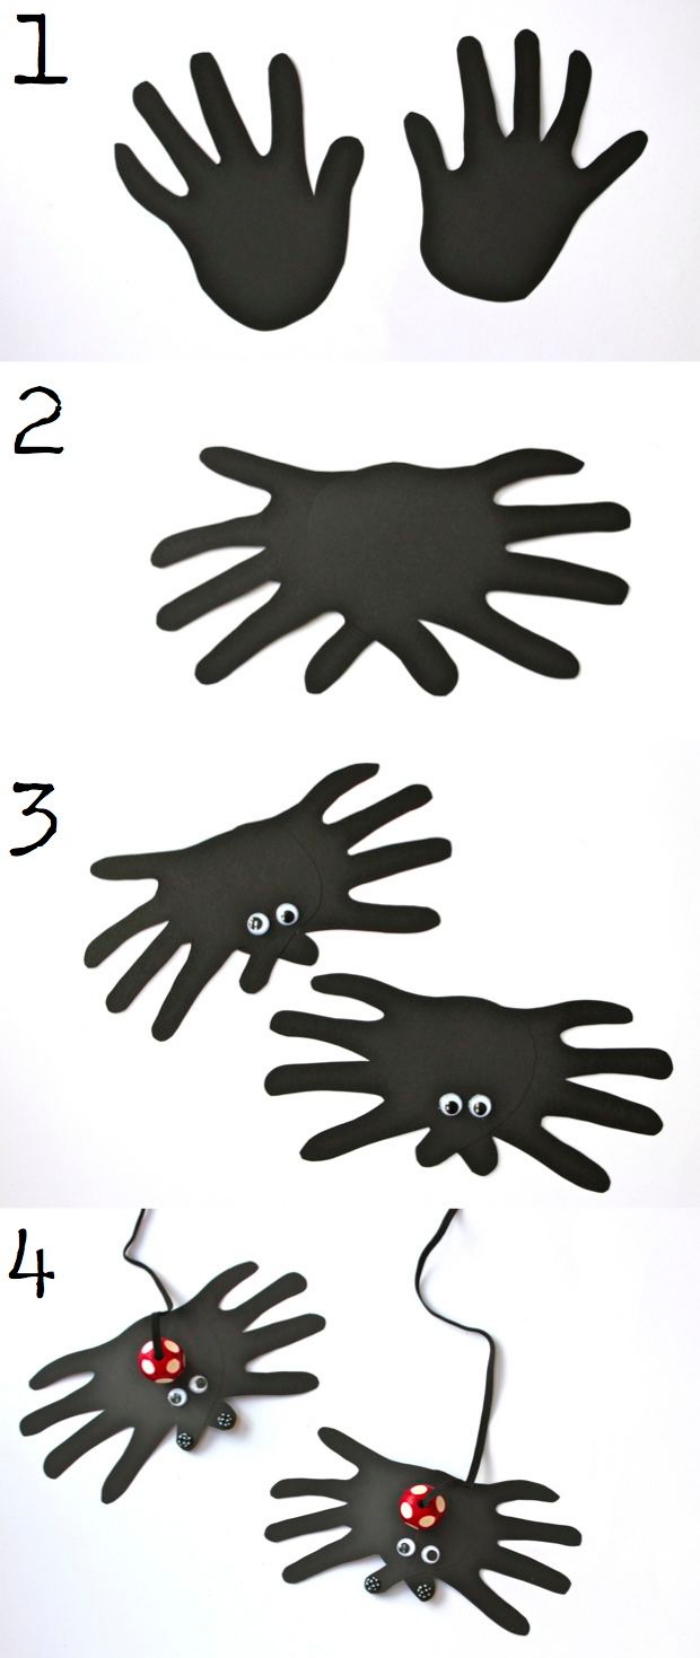 idée d'activité manuelle facile et rapide sur le thème d'halloween pour amuser les enfants, araignée empreinte de main en papier avec balle qui rebondit